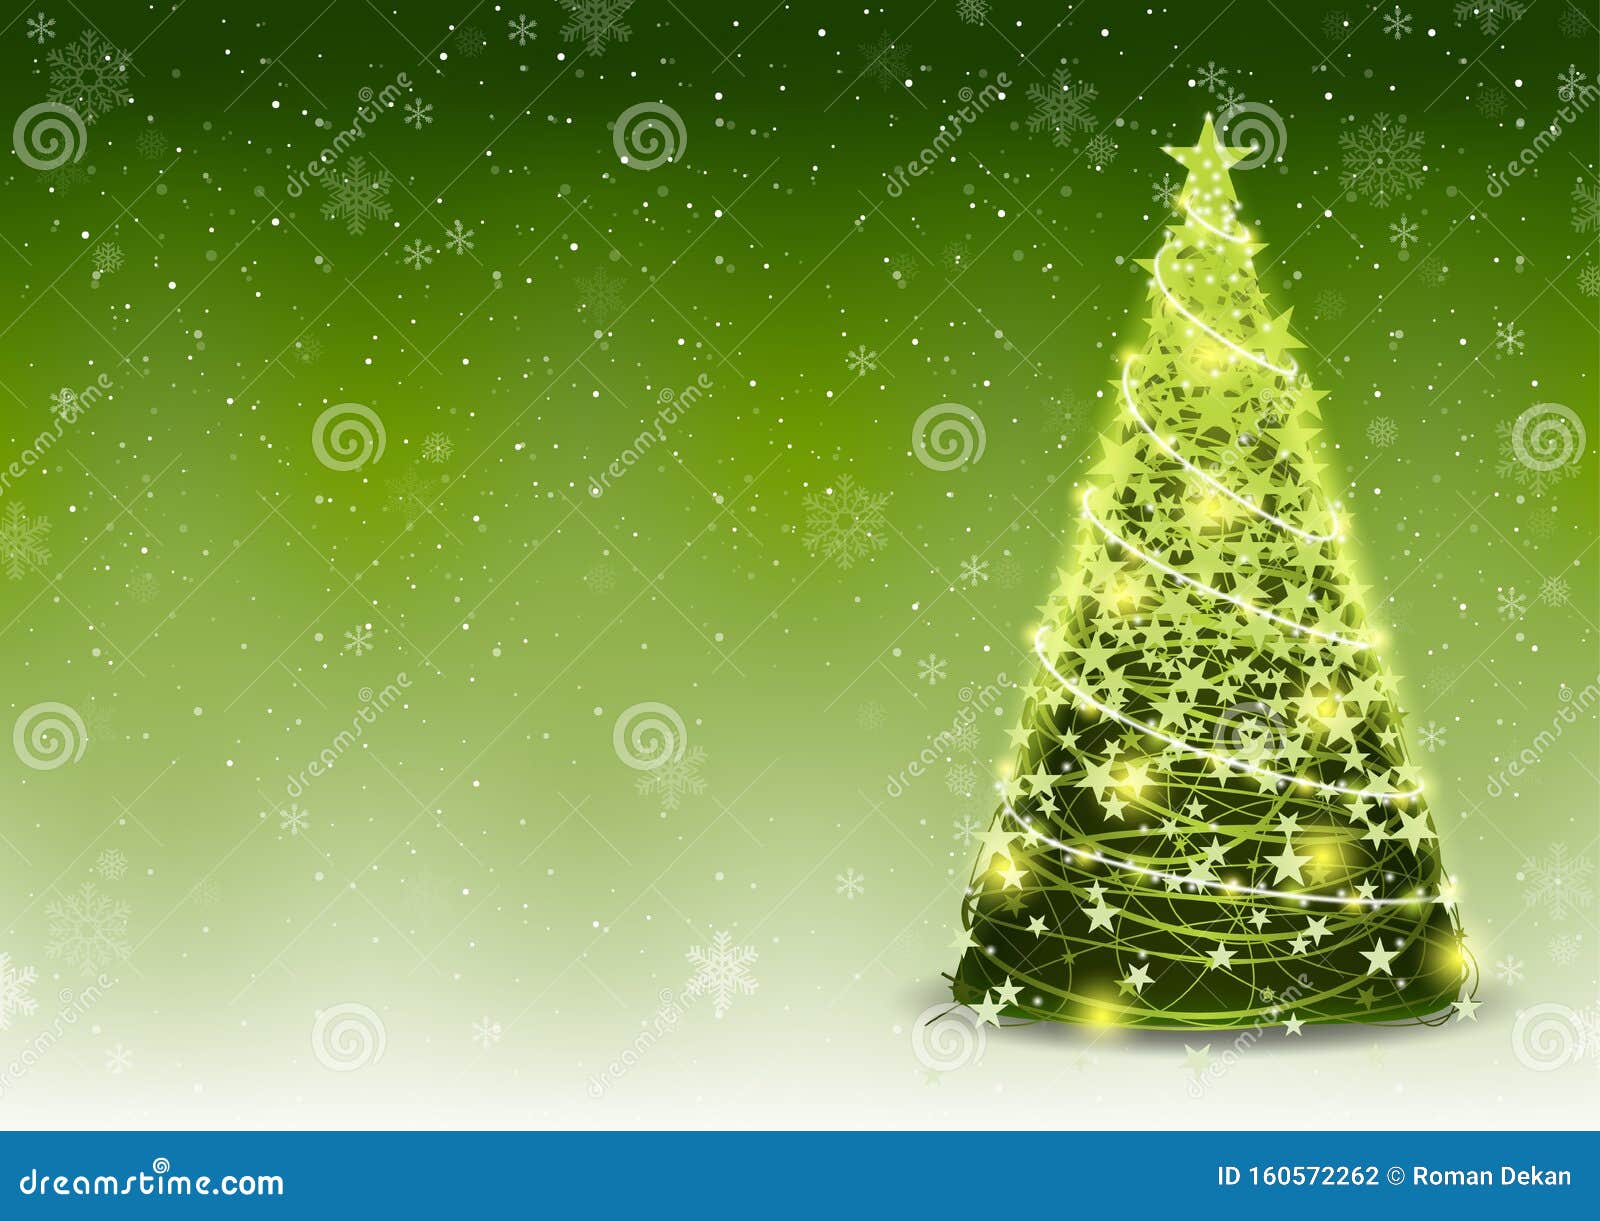 Cây thông Giáng sinh với tuyết rơi, tạo nên một bức tranh đẹp và hoàn hảo đầy tôn vinh cho ngày lễ Giáng sinh. Hình nền cây thông Giáng sinh màu xanh lá cây với tuyết rơi sẽ mang đến cho bạn cảm giác ấm áp và đầy tình yêu thương. Tải về và sử dụng ngay thôi nào!